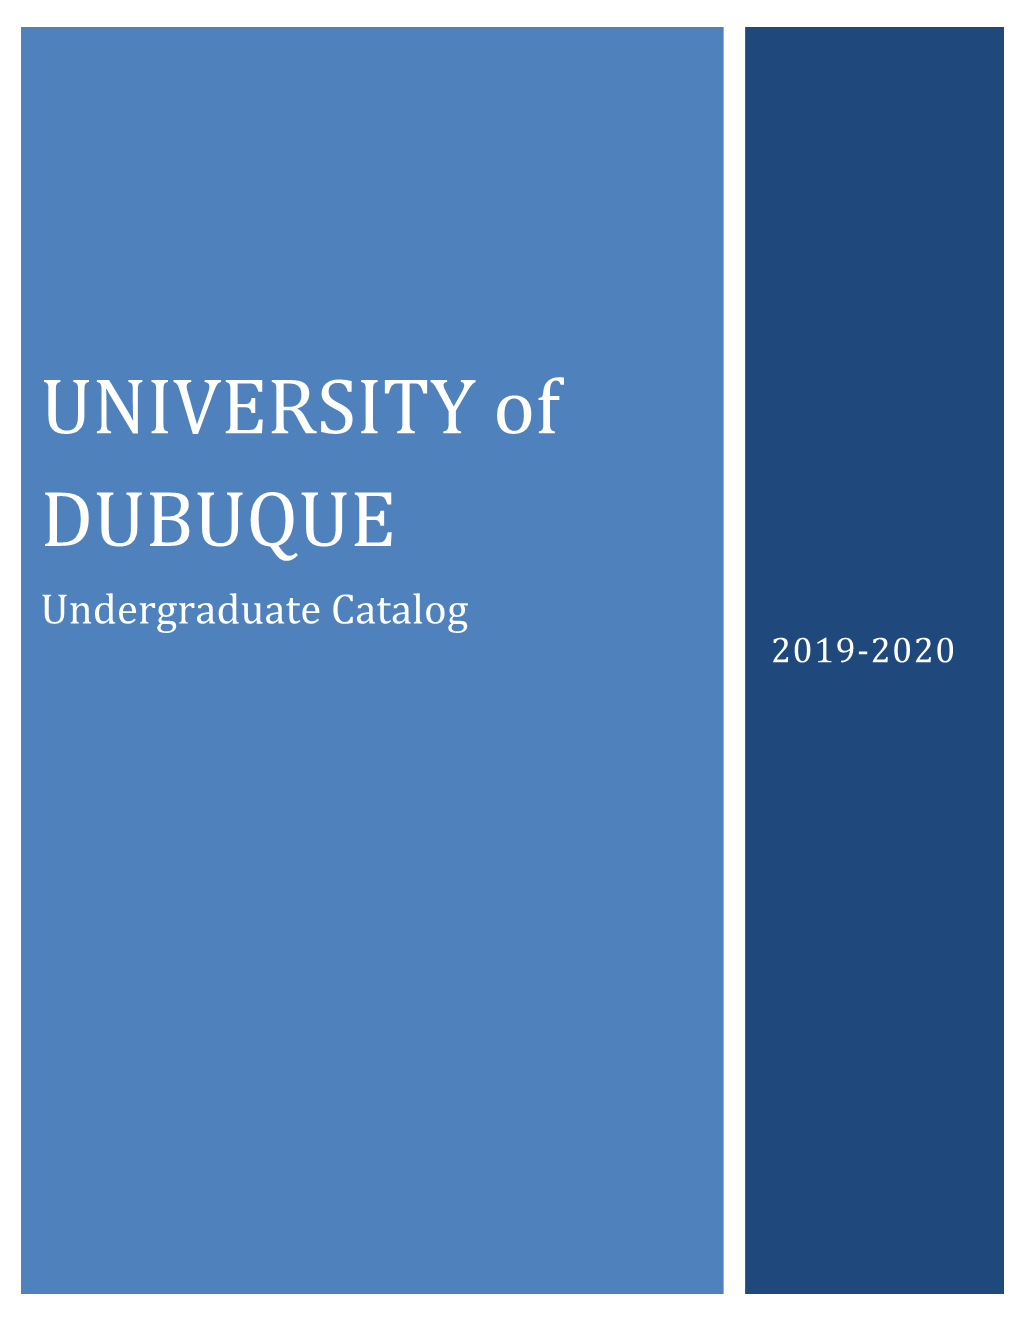 Undergraduate Catalog 2019-2020